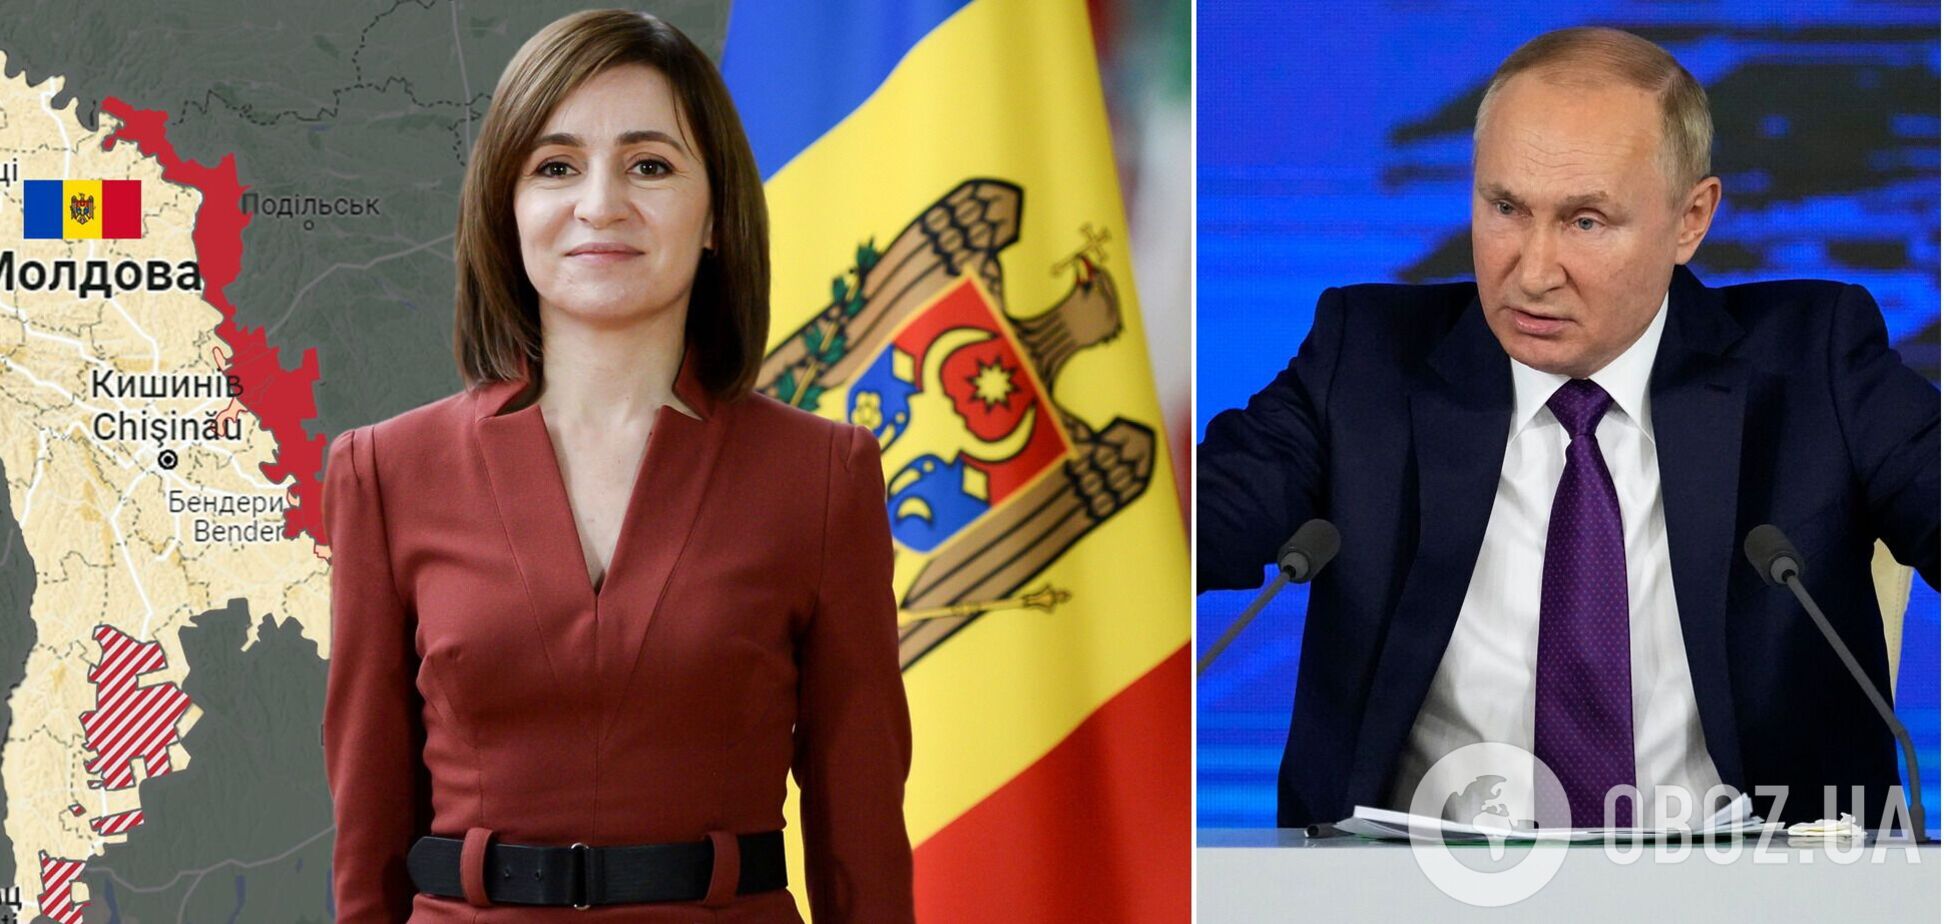 Как в Молдове может быть разыгран гибридный сценарий свержения власти